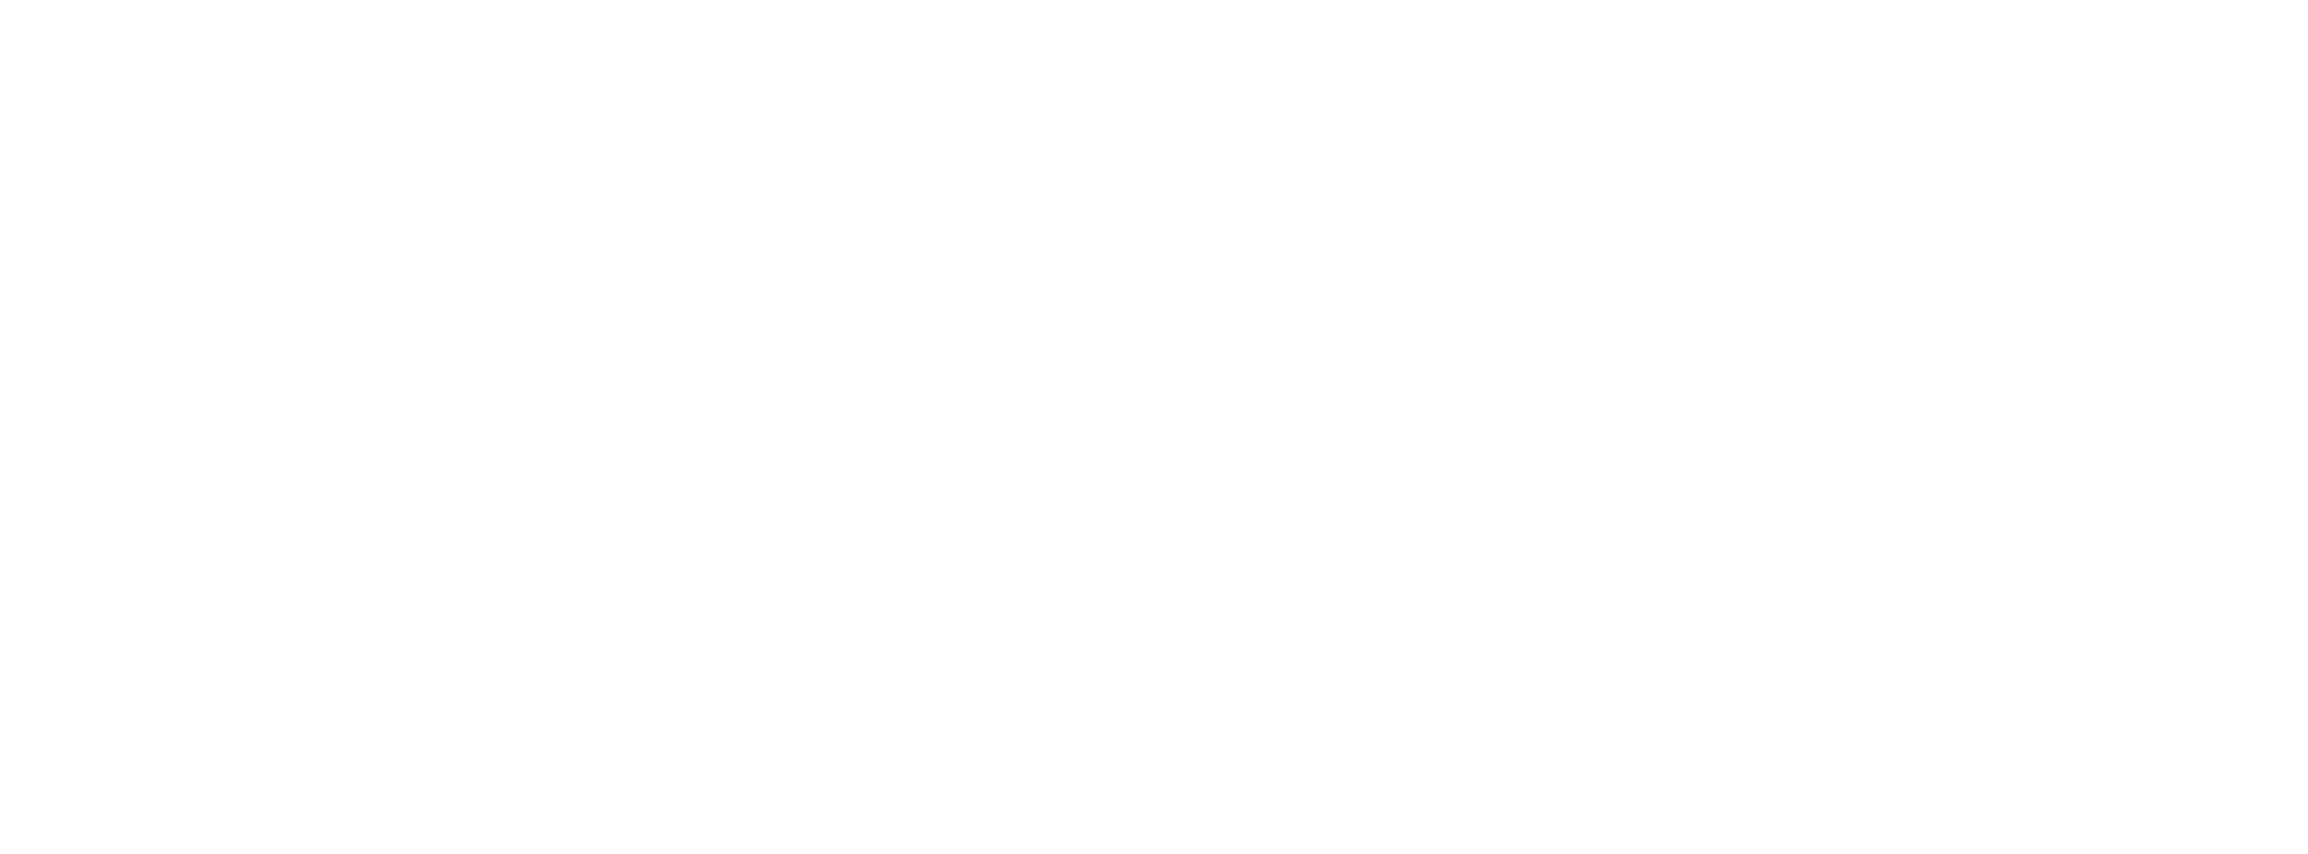 blueZones_logo